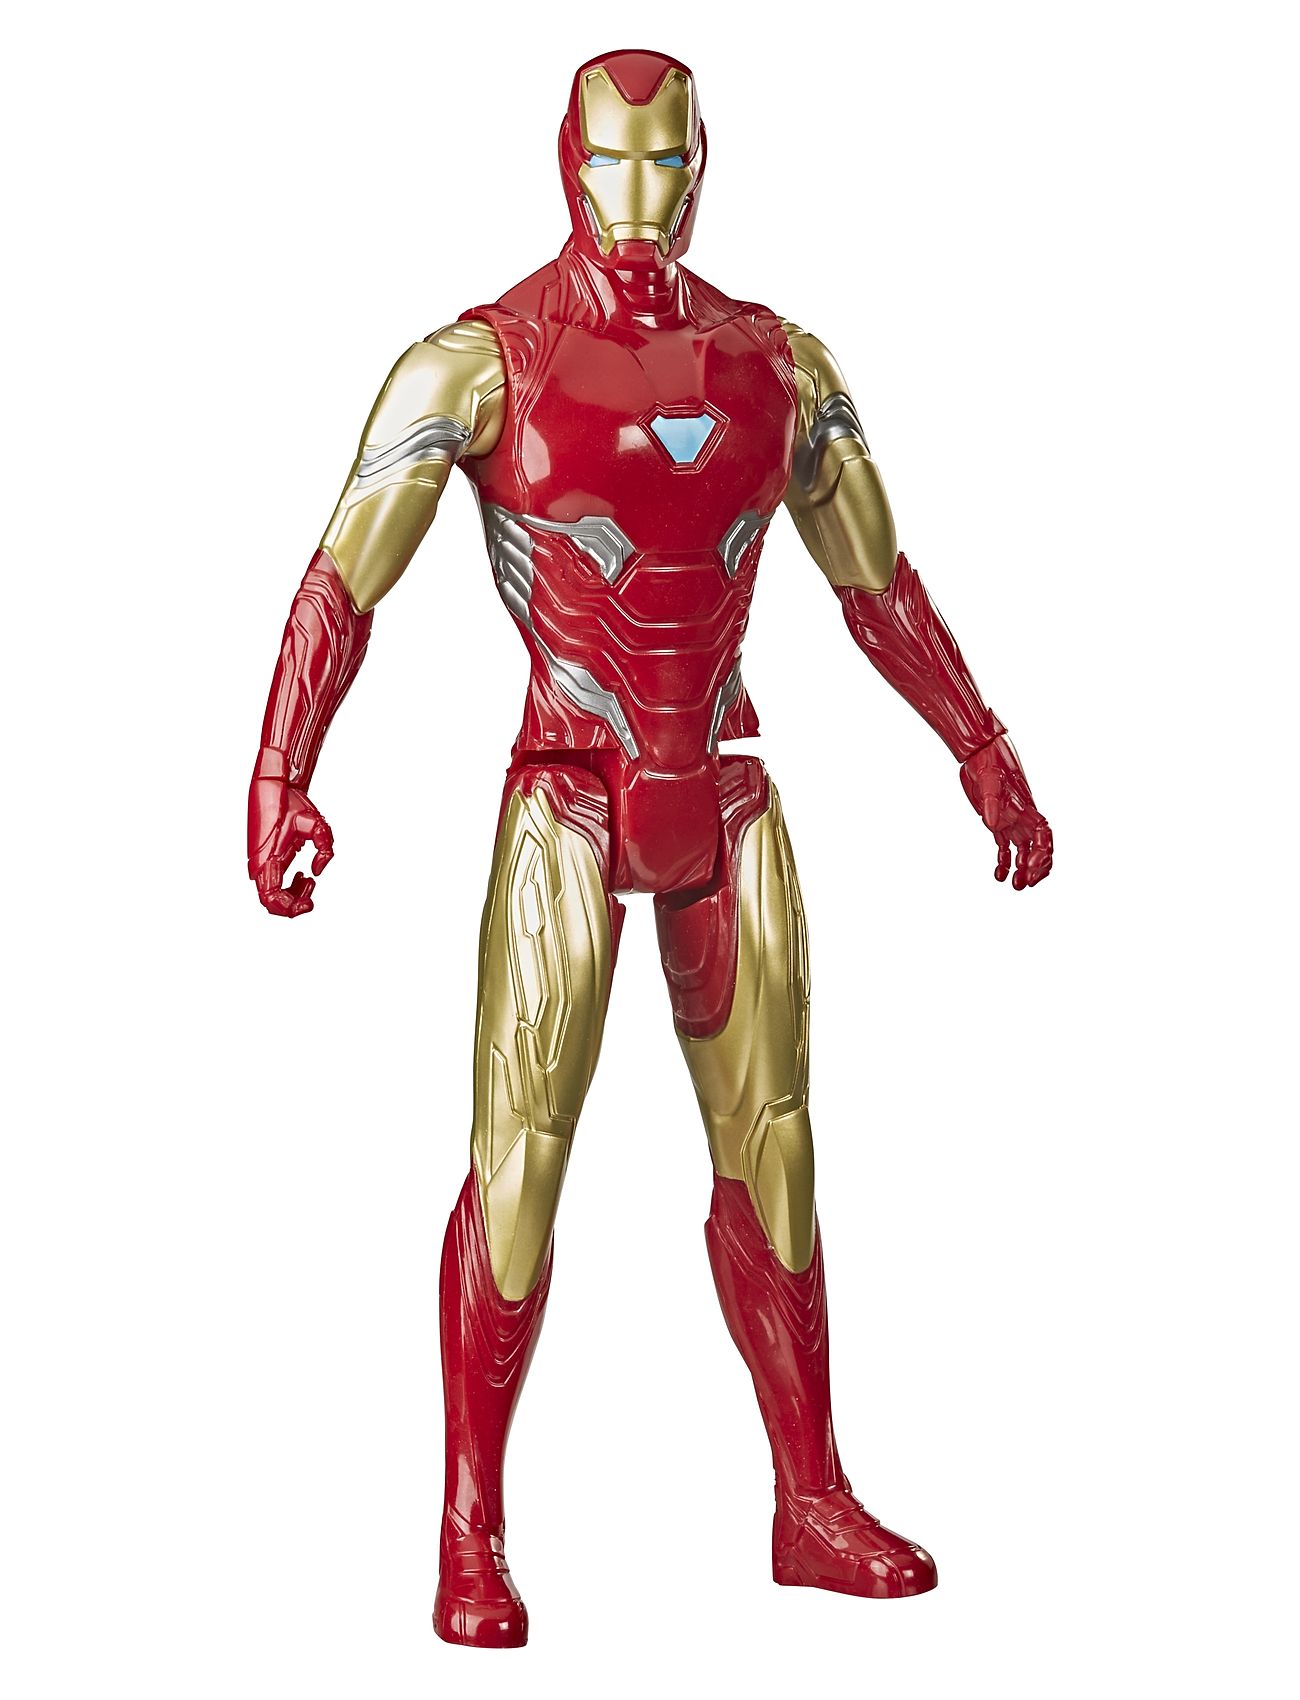 Marvel Avengers: Endgame Children's Toy Figure Toys Playsets & Action Figures Action Figures Multi/patterned Marvel